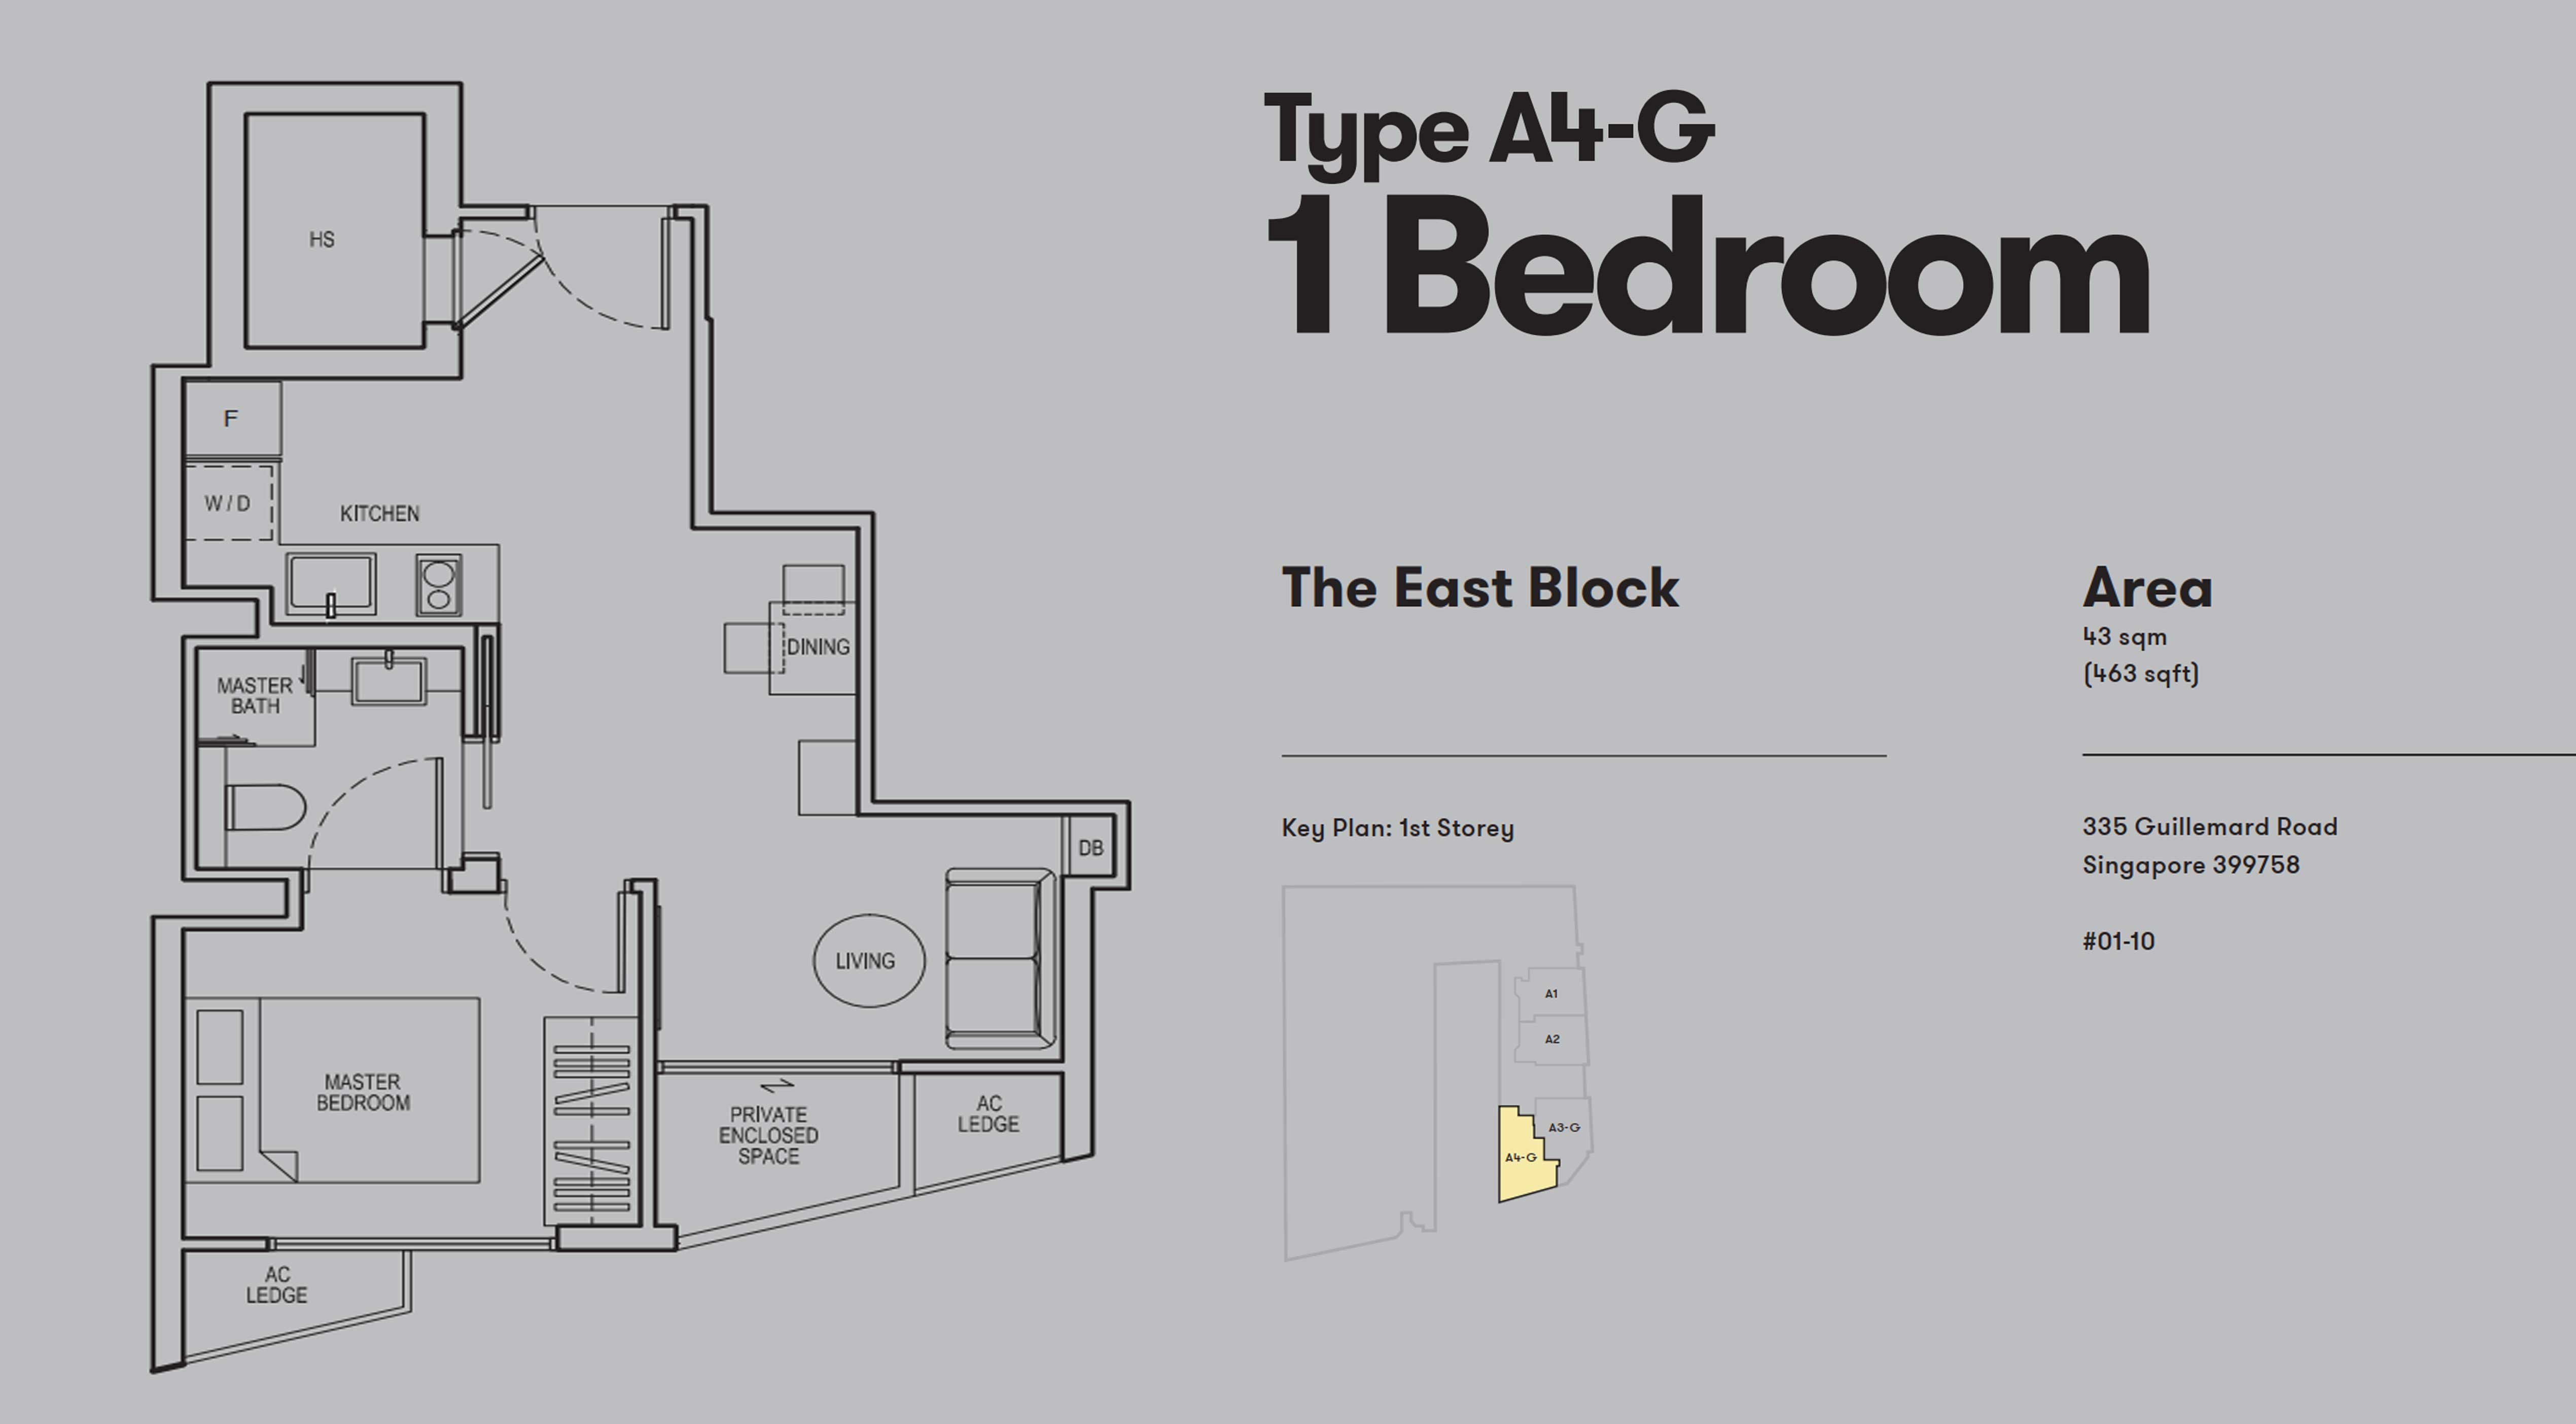 1 Bedroom Type A4-G